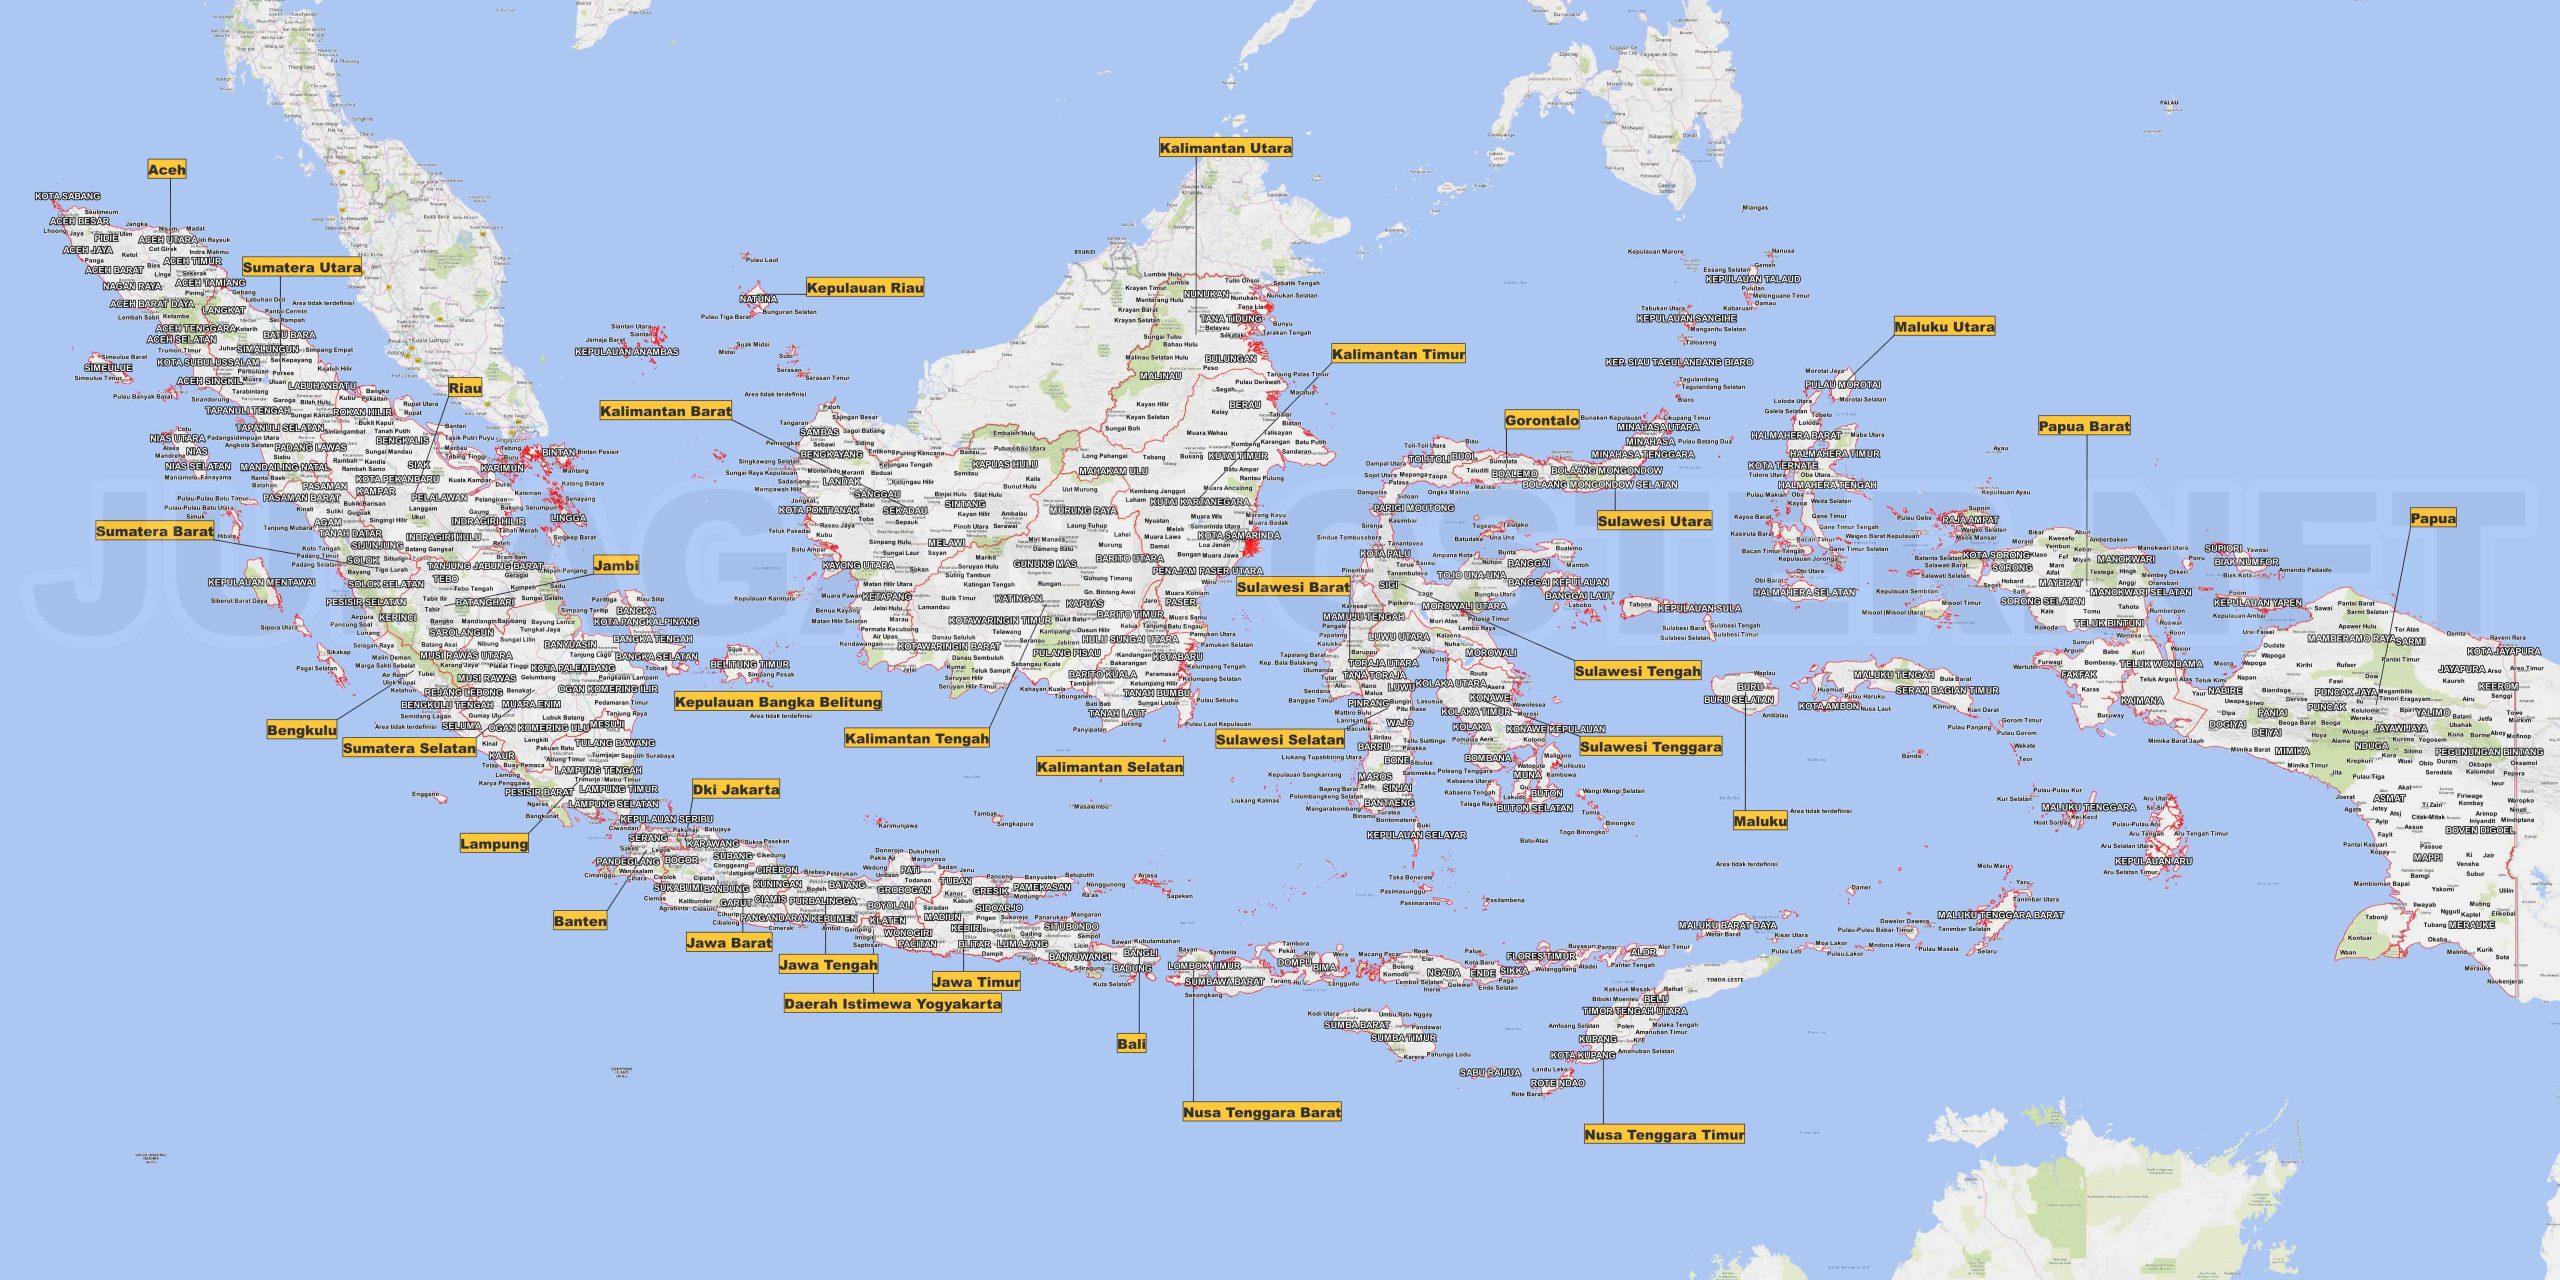 Tuliskan Batas-Batas Geografis Indonesia Berdasarkan Peta Berikut: Informasi Penting